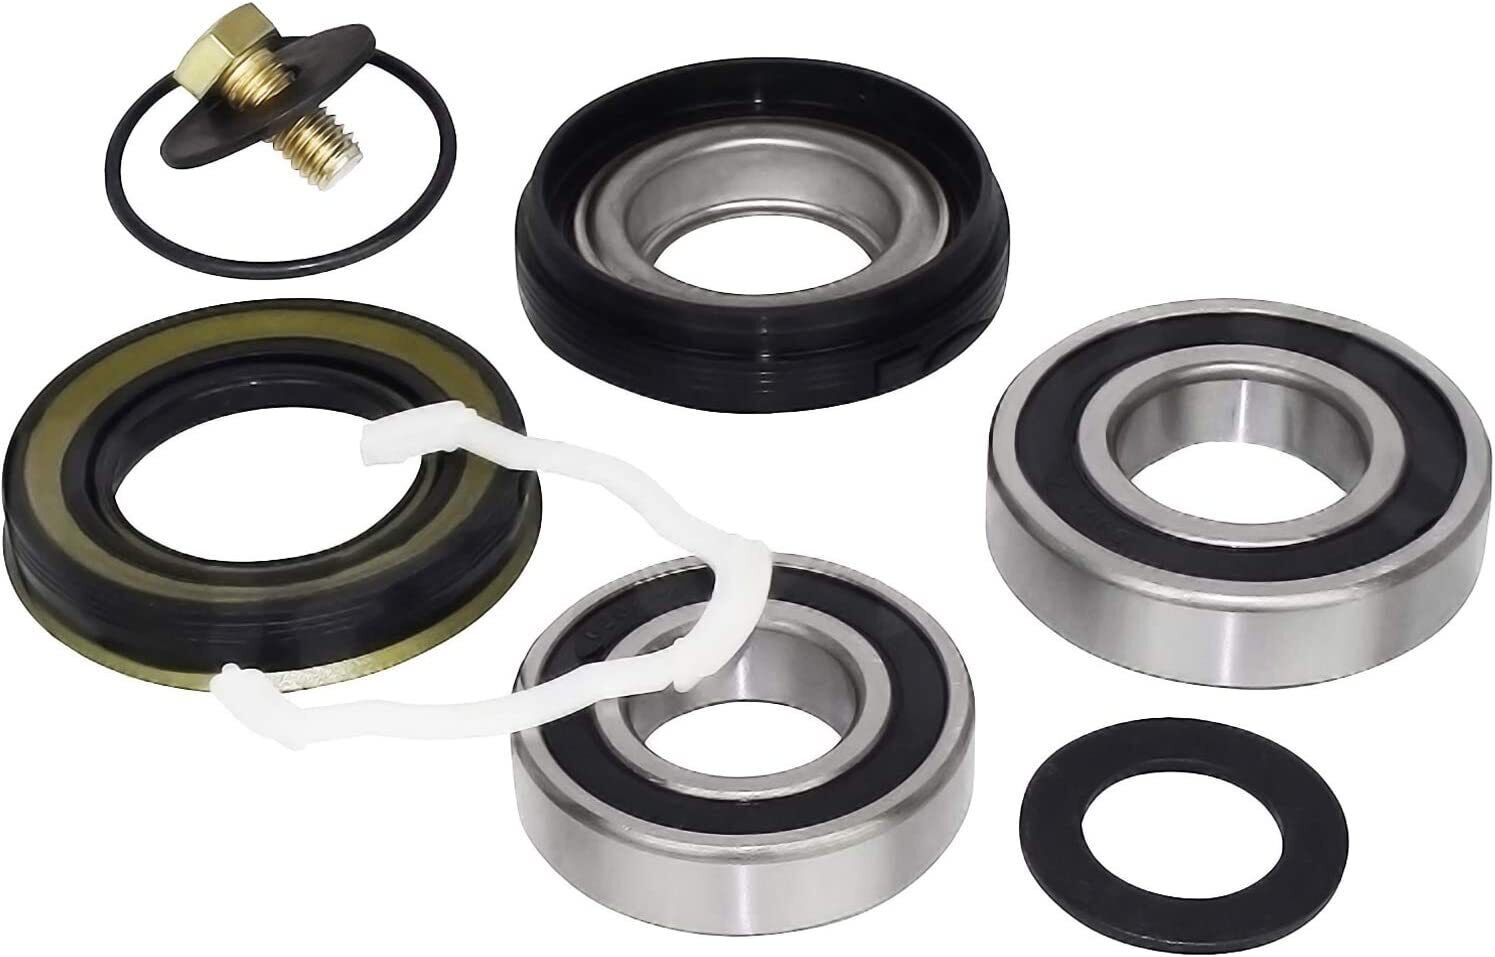 12002022 Replacement Bearings Washer Rear Drum Front Drum Bearing & Seal Repair 